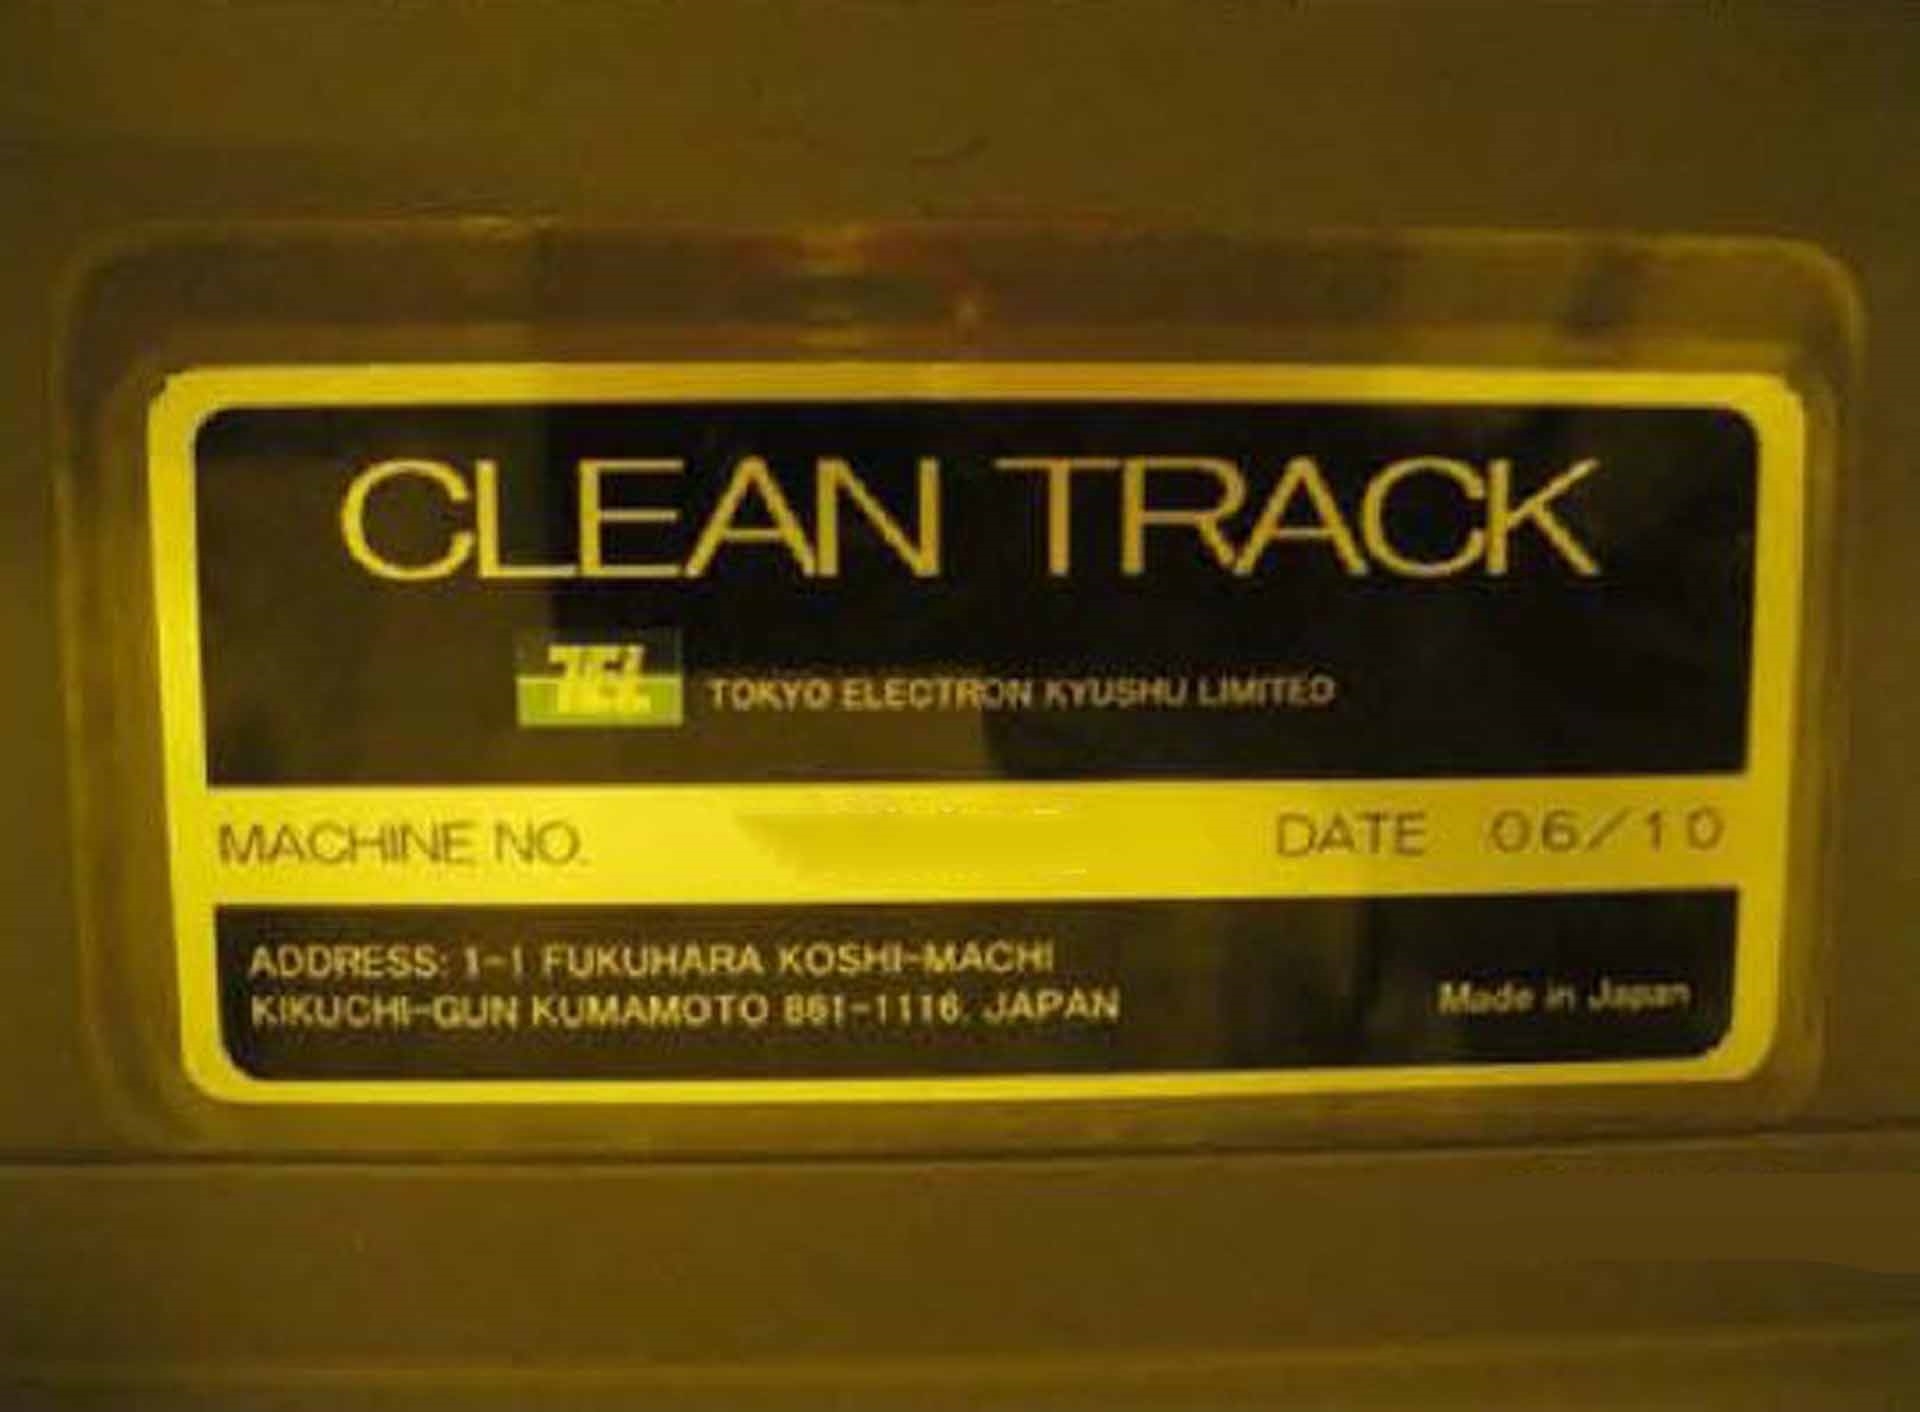 사진 사용됨 TEL / TOKYO ELECTRON Clean Track Lithius 판매용